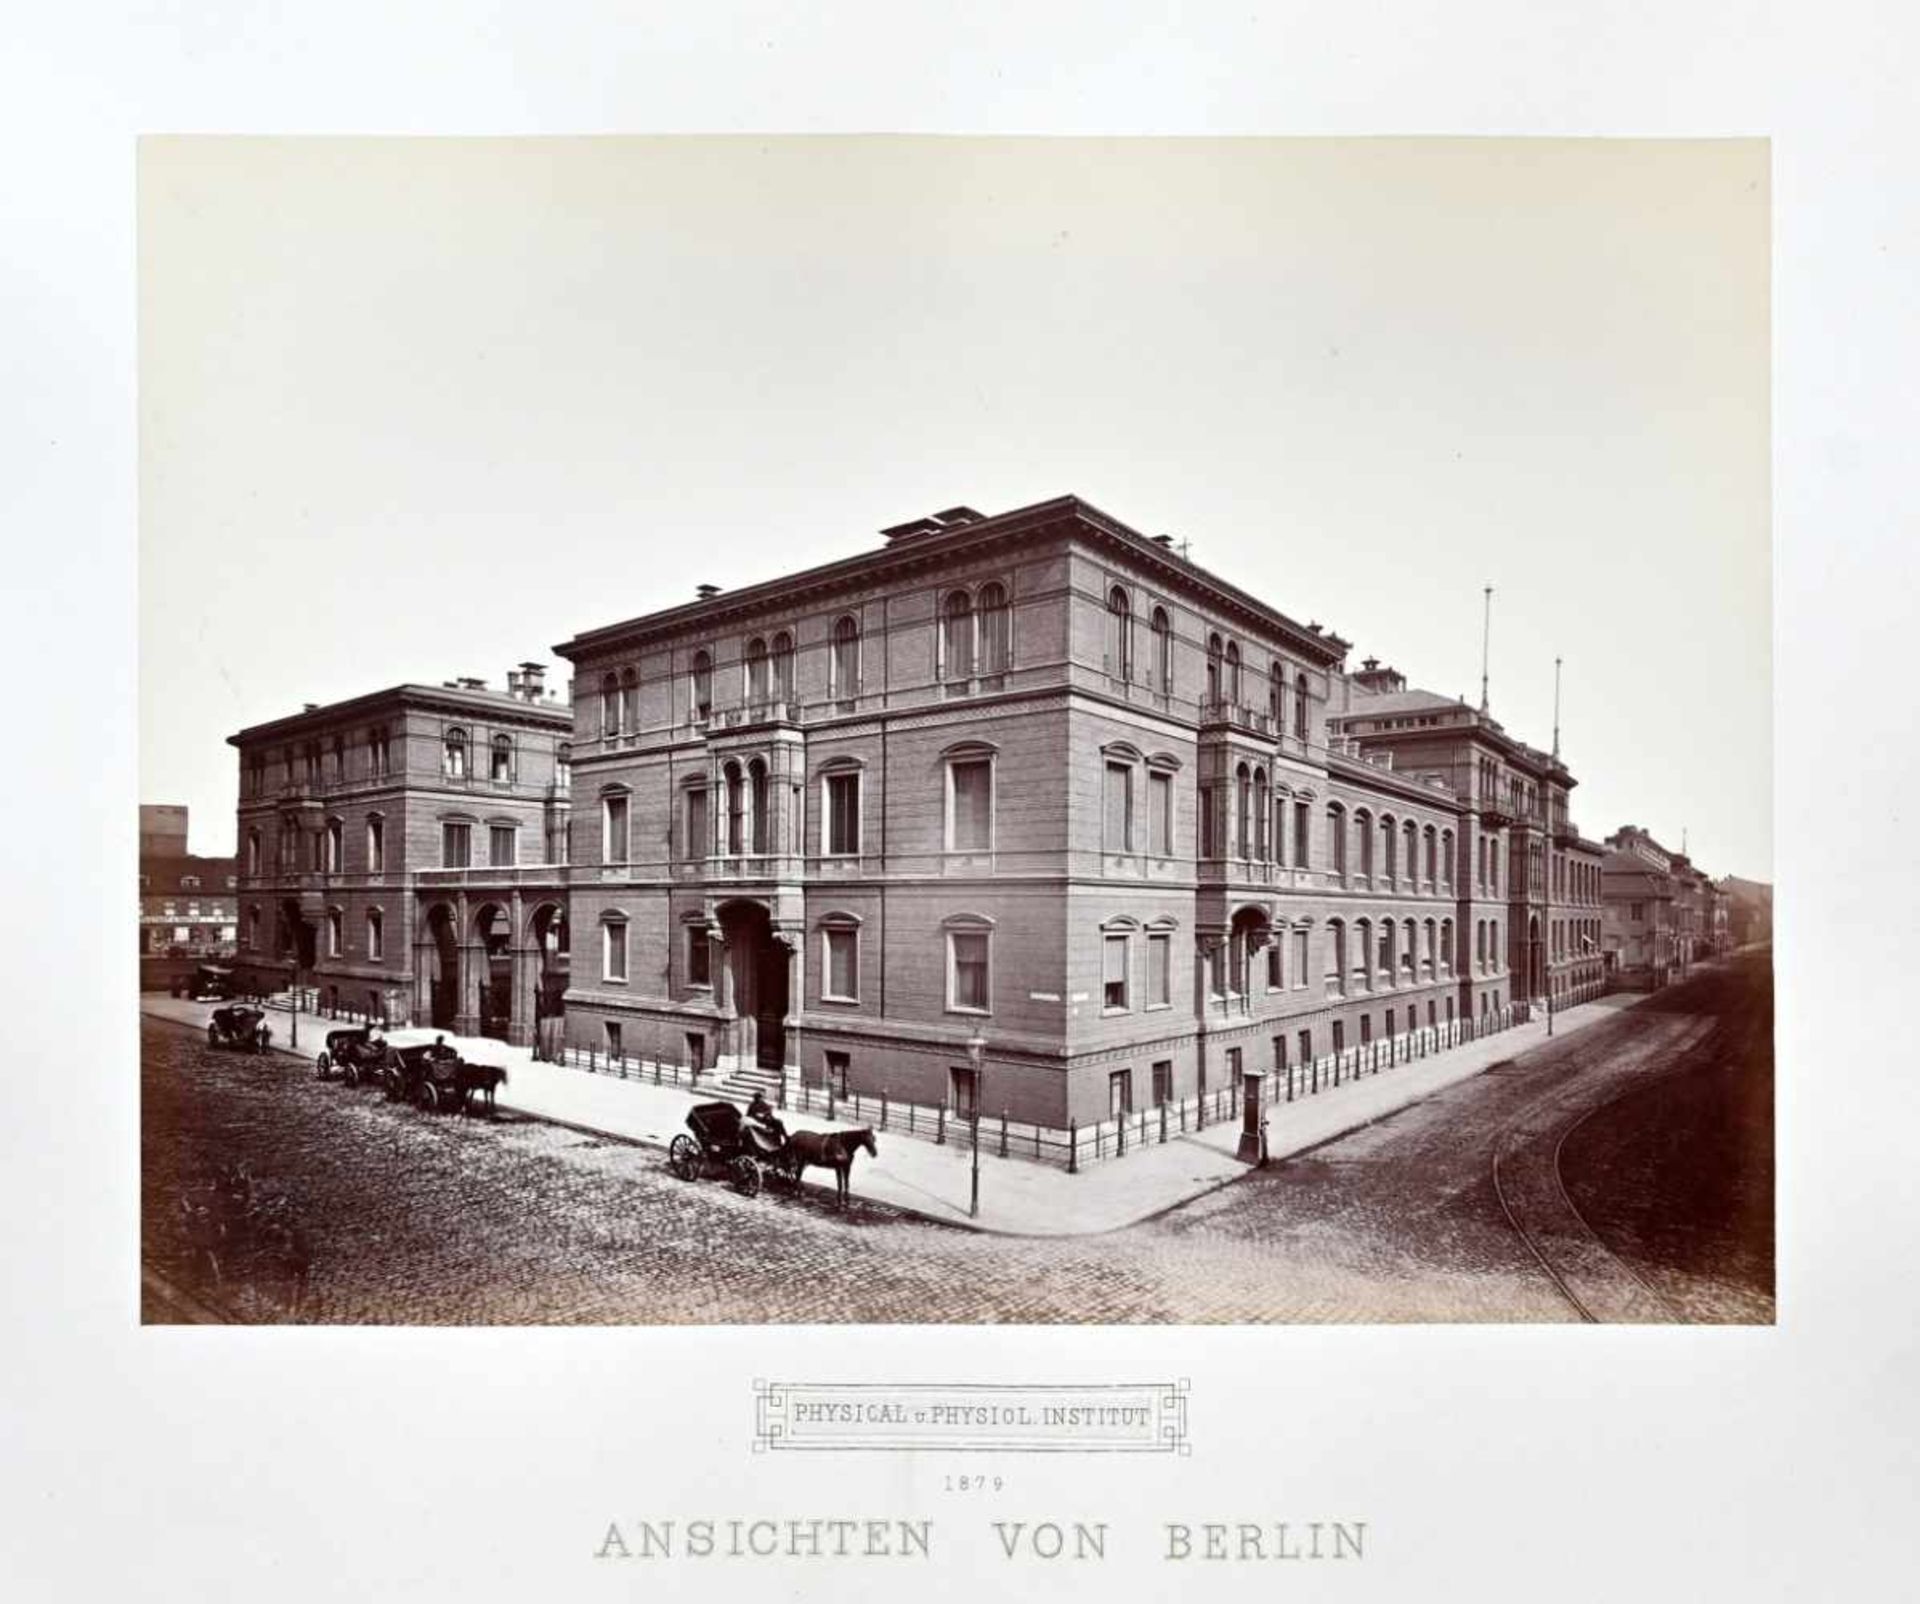 Berlin.Ansichten von Berlin. Berlin, Photographische Gesellschaft, 1879-82. 27 mont. Orig.-